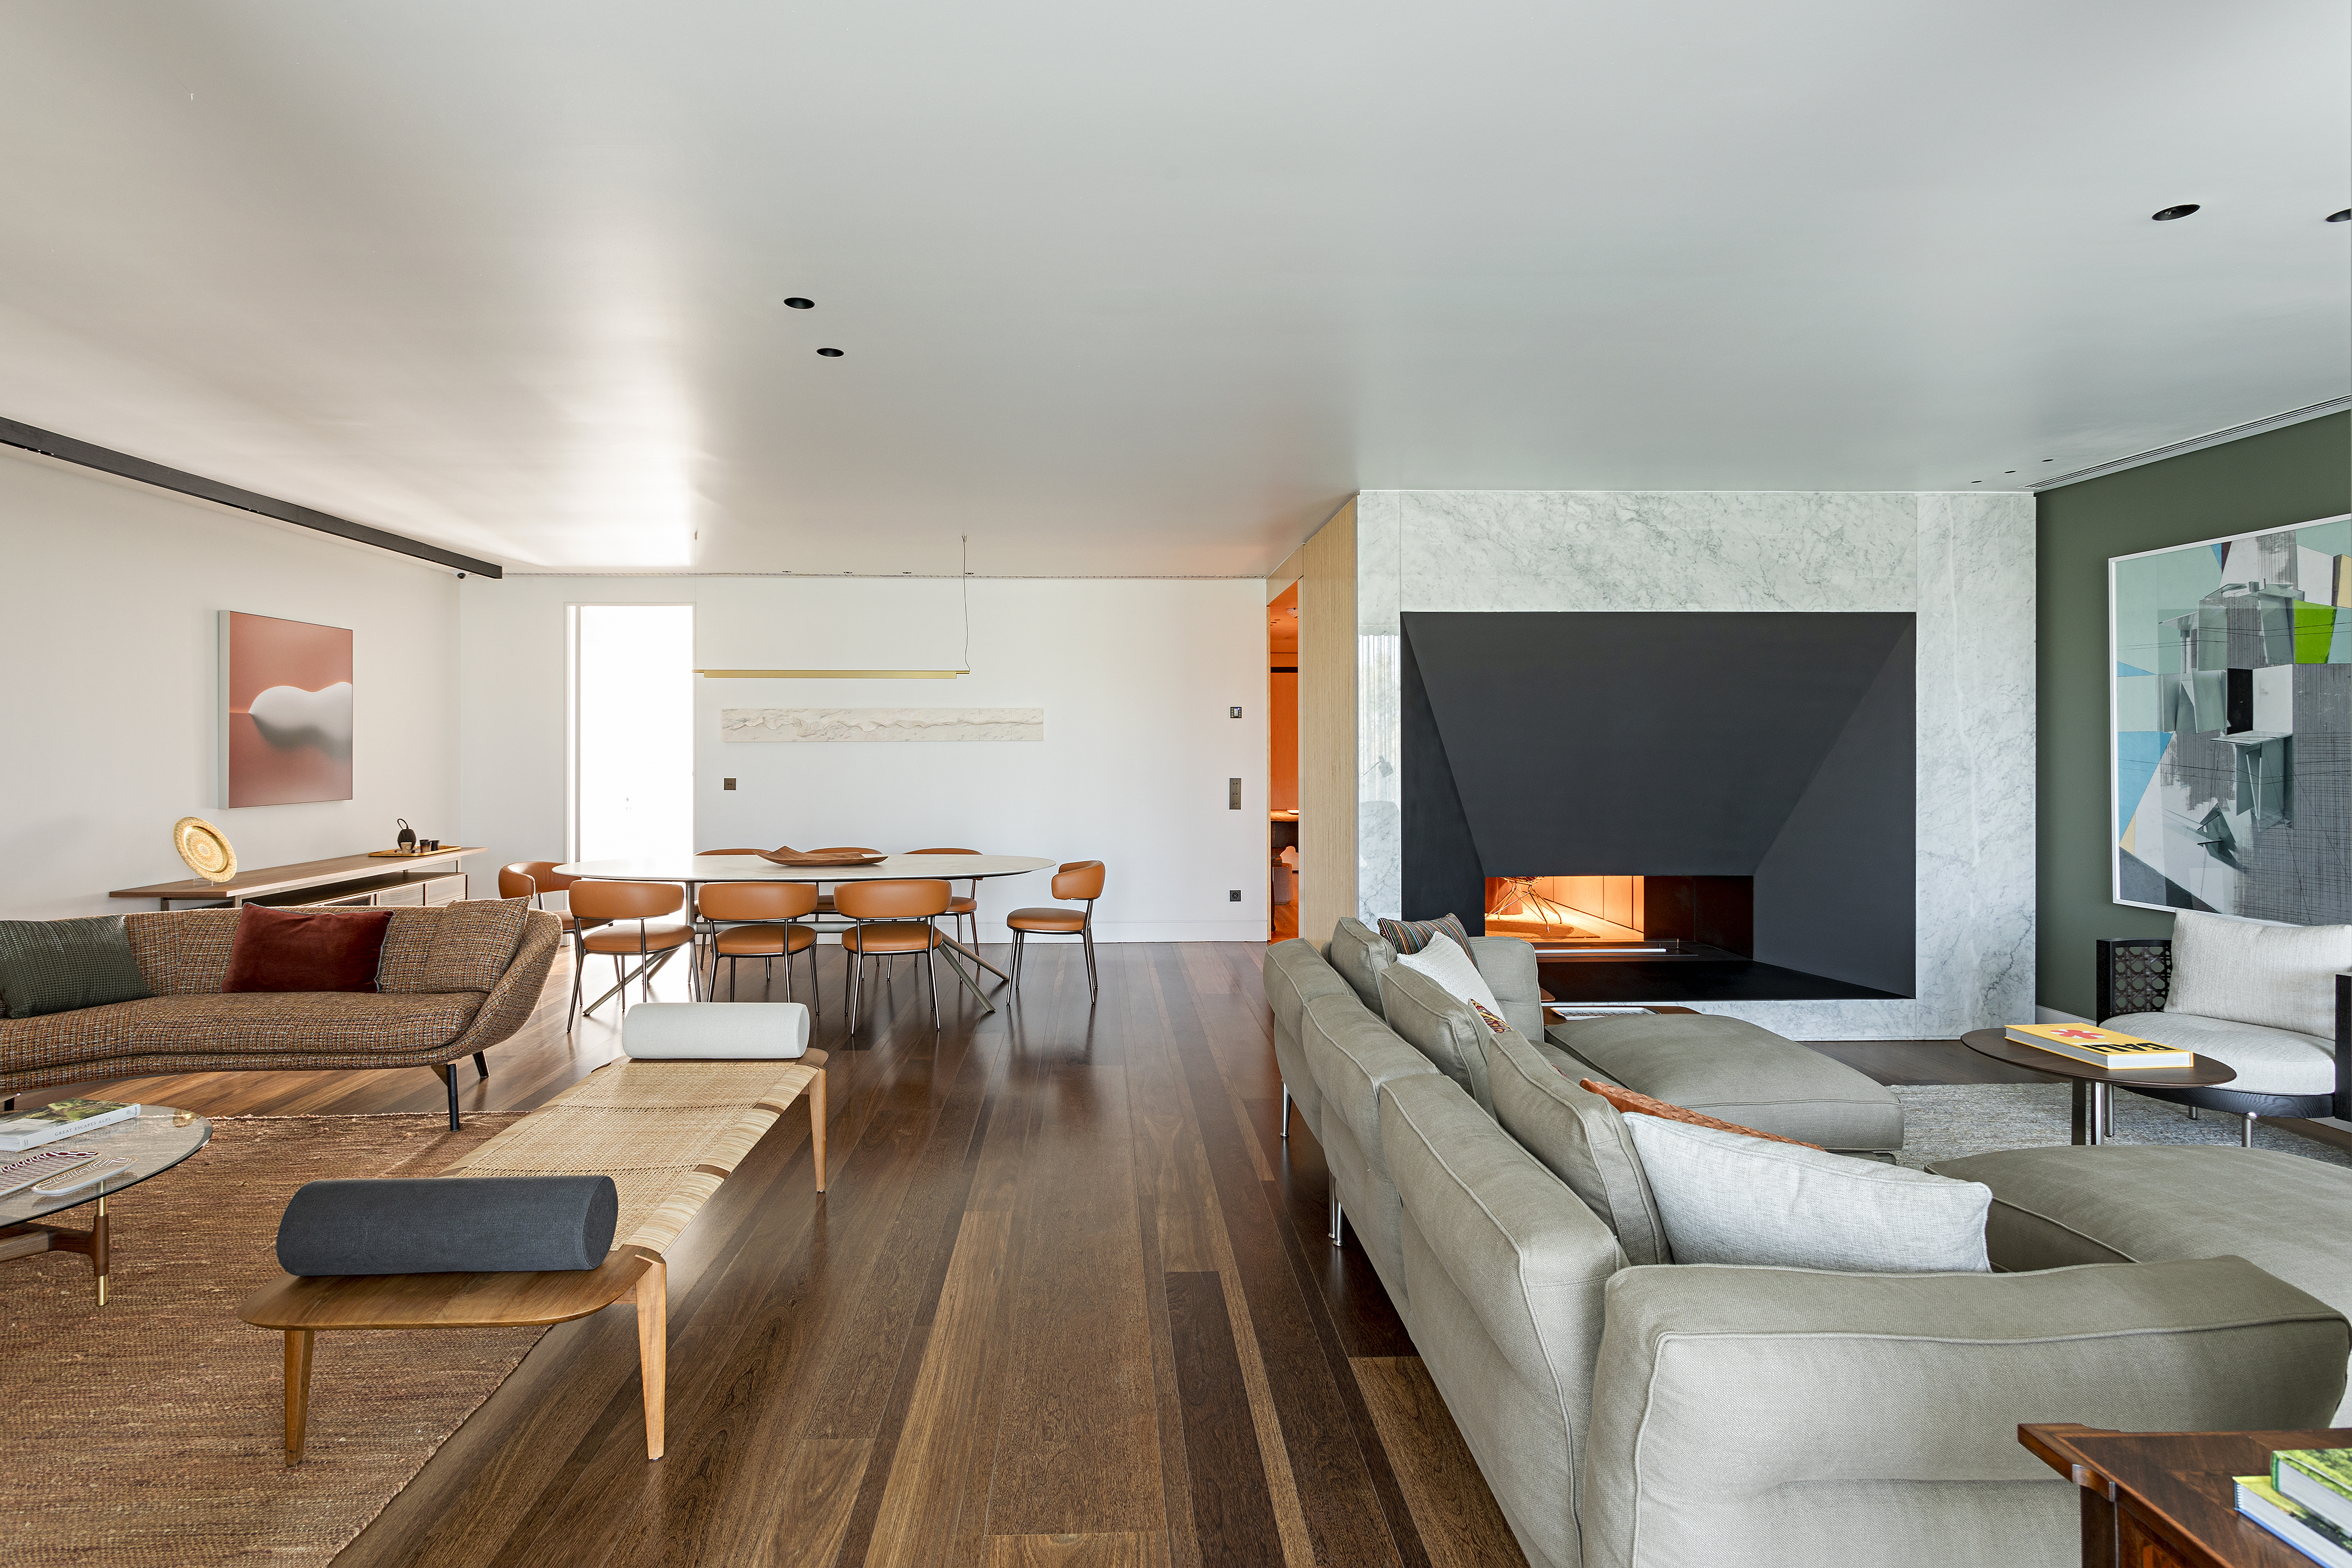 Mix entre antigo e moderno com diferentes culturas define apê de 290 m². Projeto de Andrea Chicharo Arquitetura. Na foto, sala integrada, piso de madeira, banco.